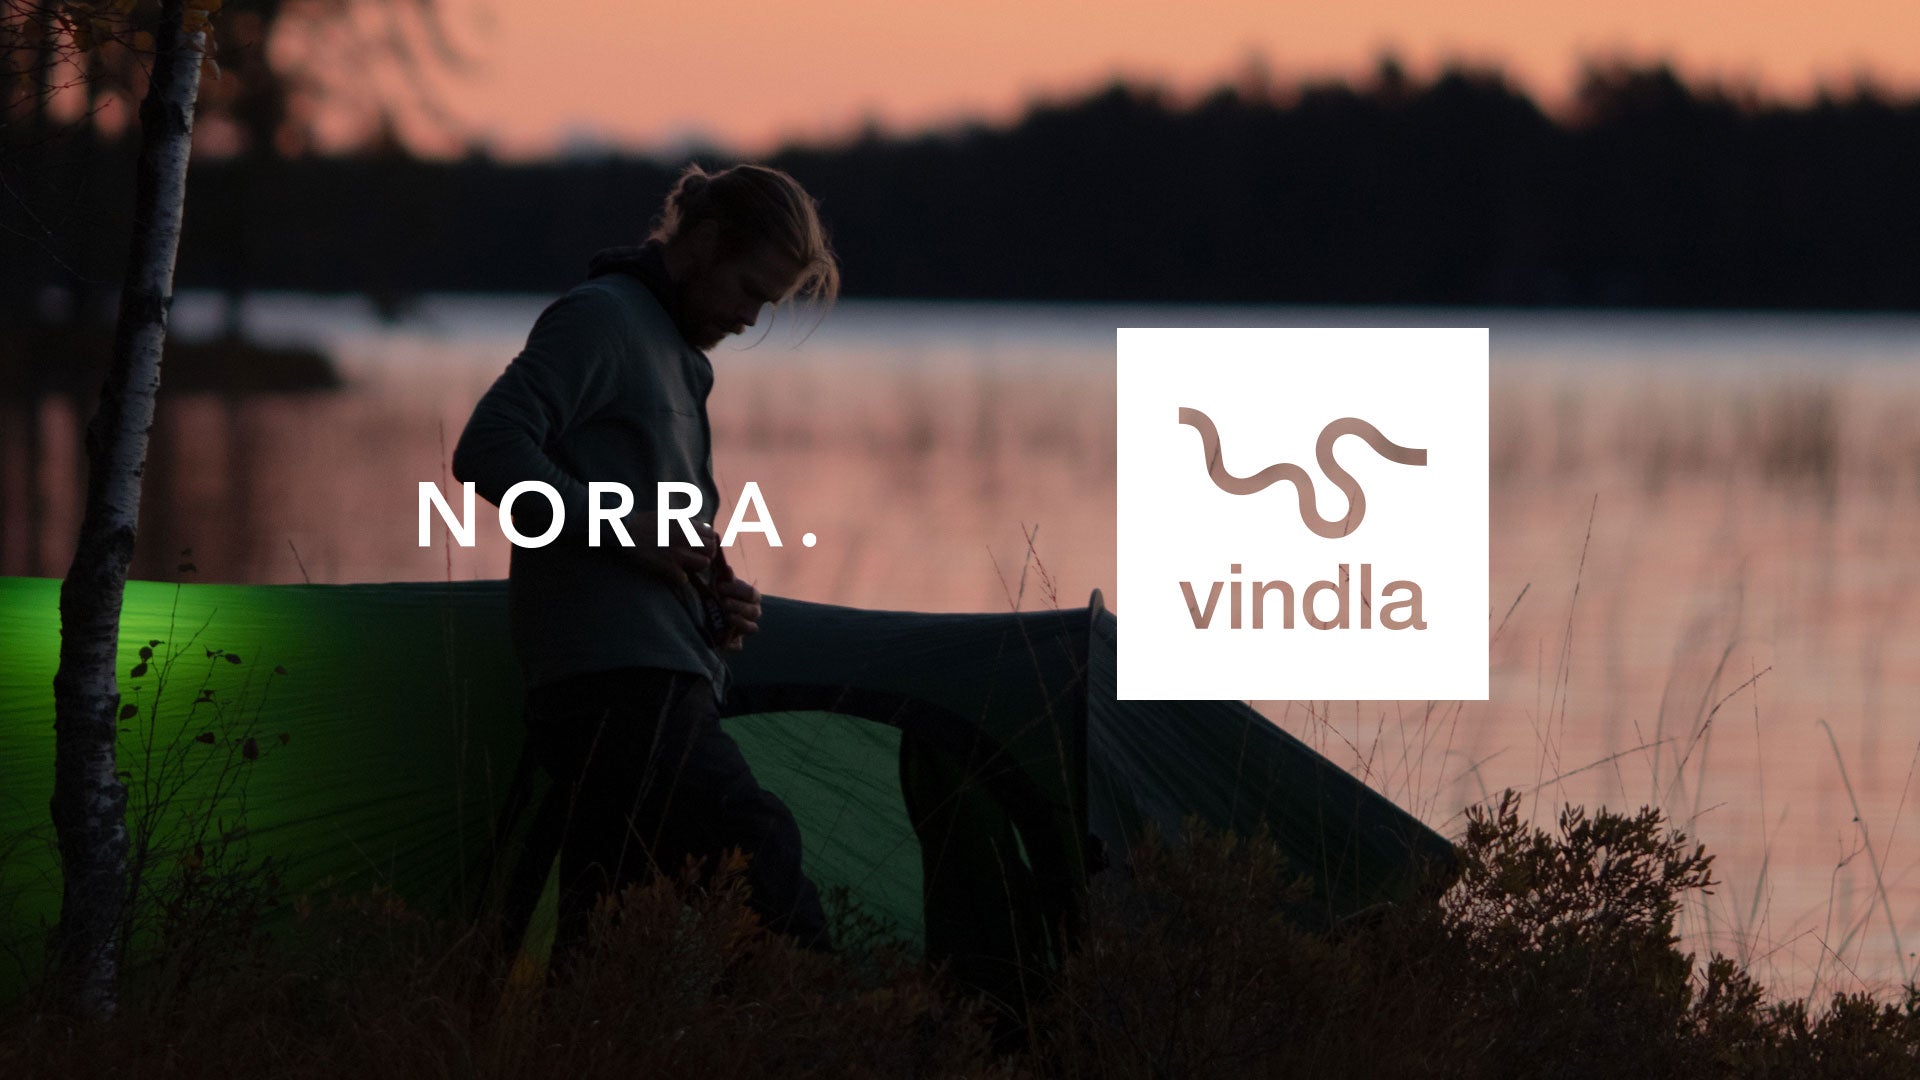 Load video: Norra is now vindla